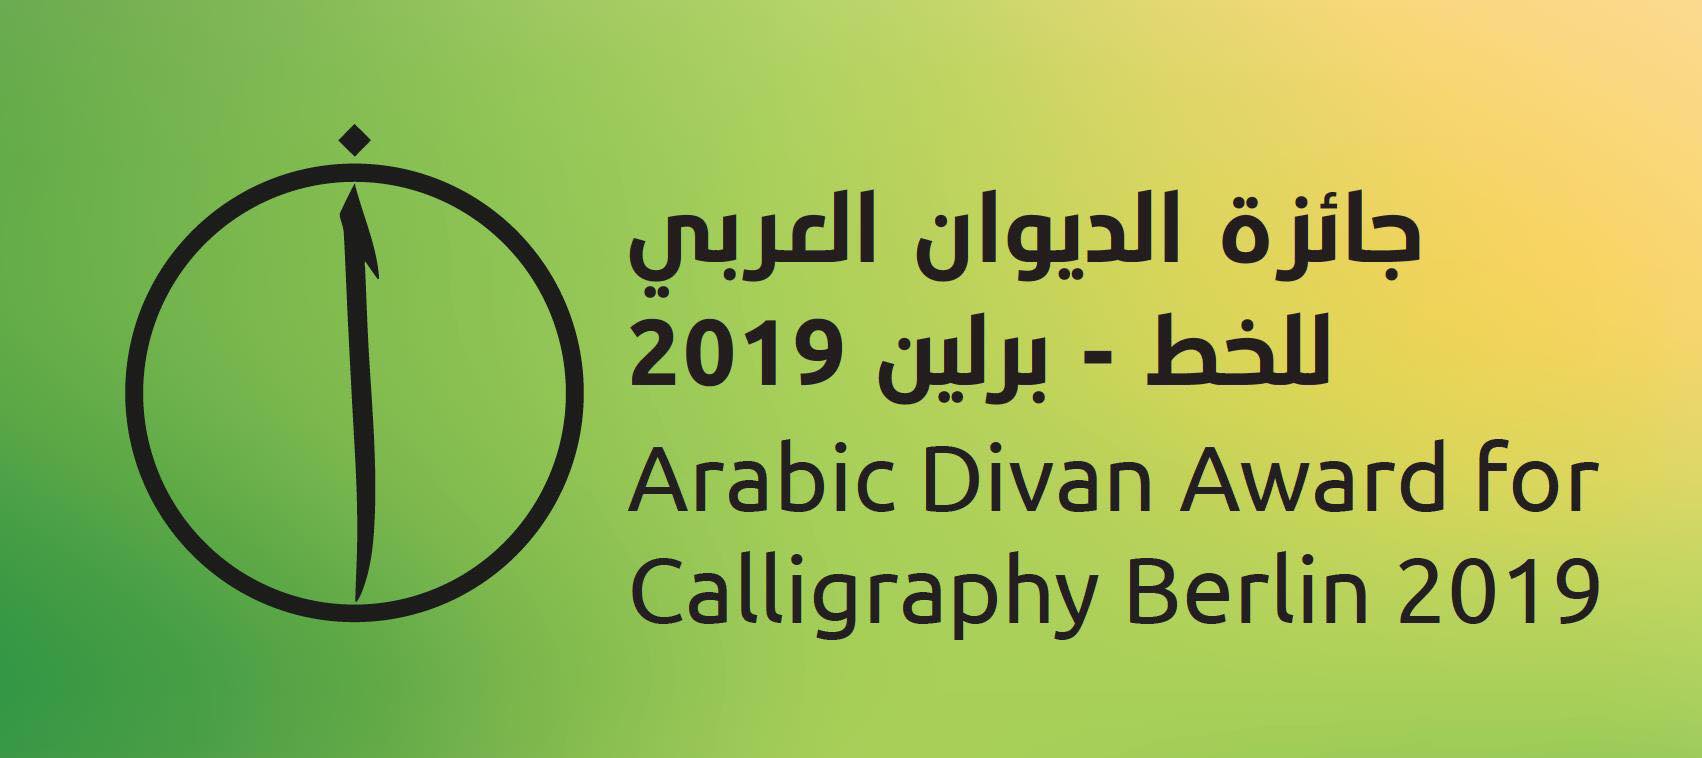 Download Selamat kepada para pemenang
The jury members of the Arabic Divan Award for Call…